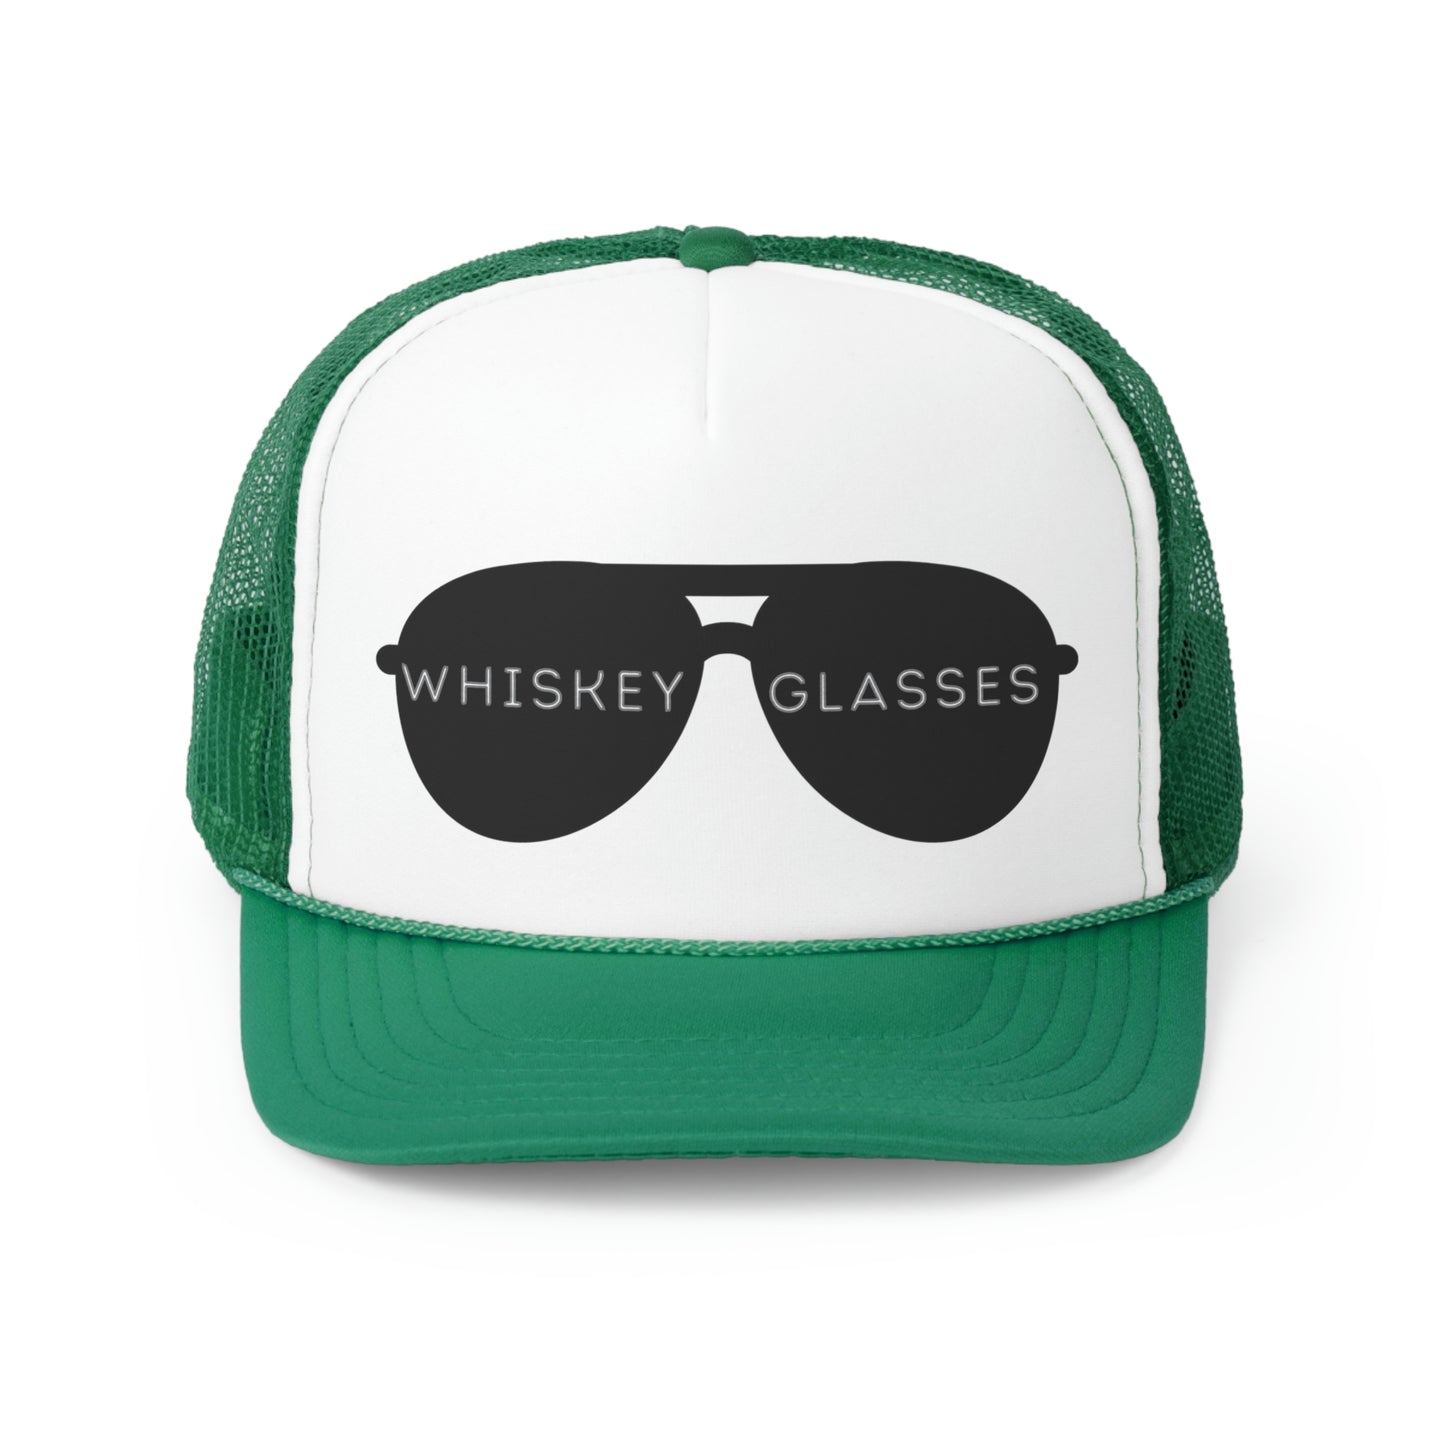 Whiskey Glasses Trucker Hat